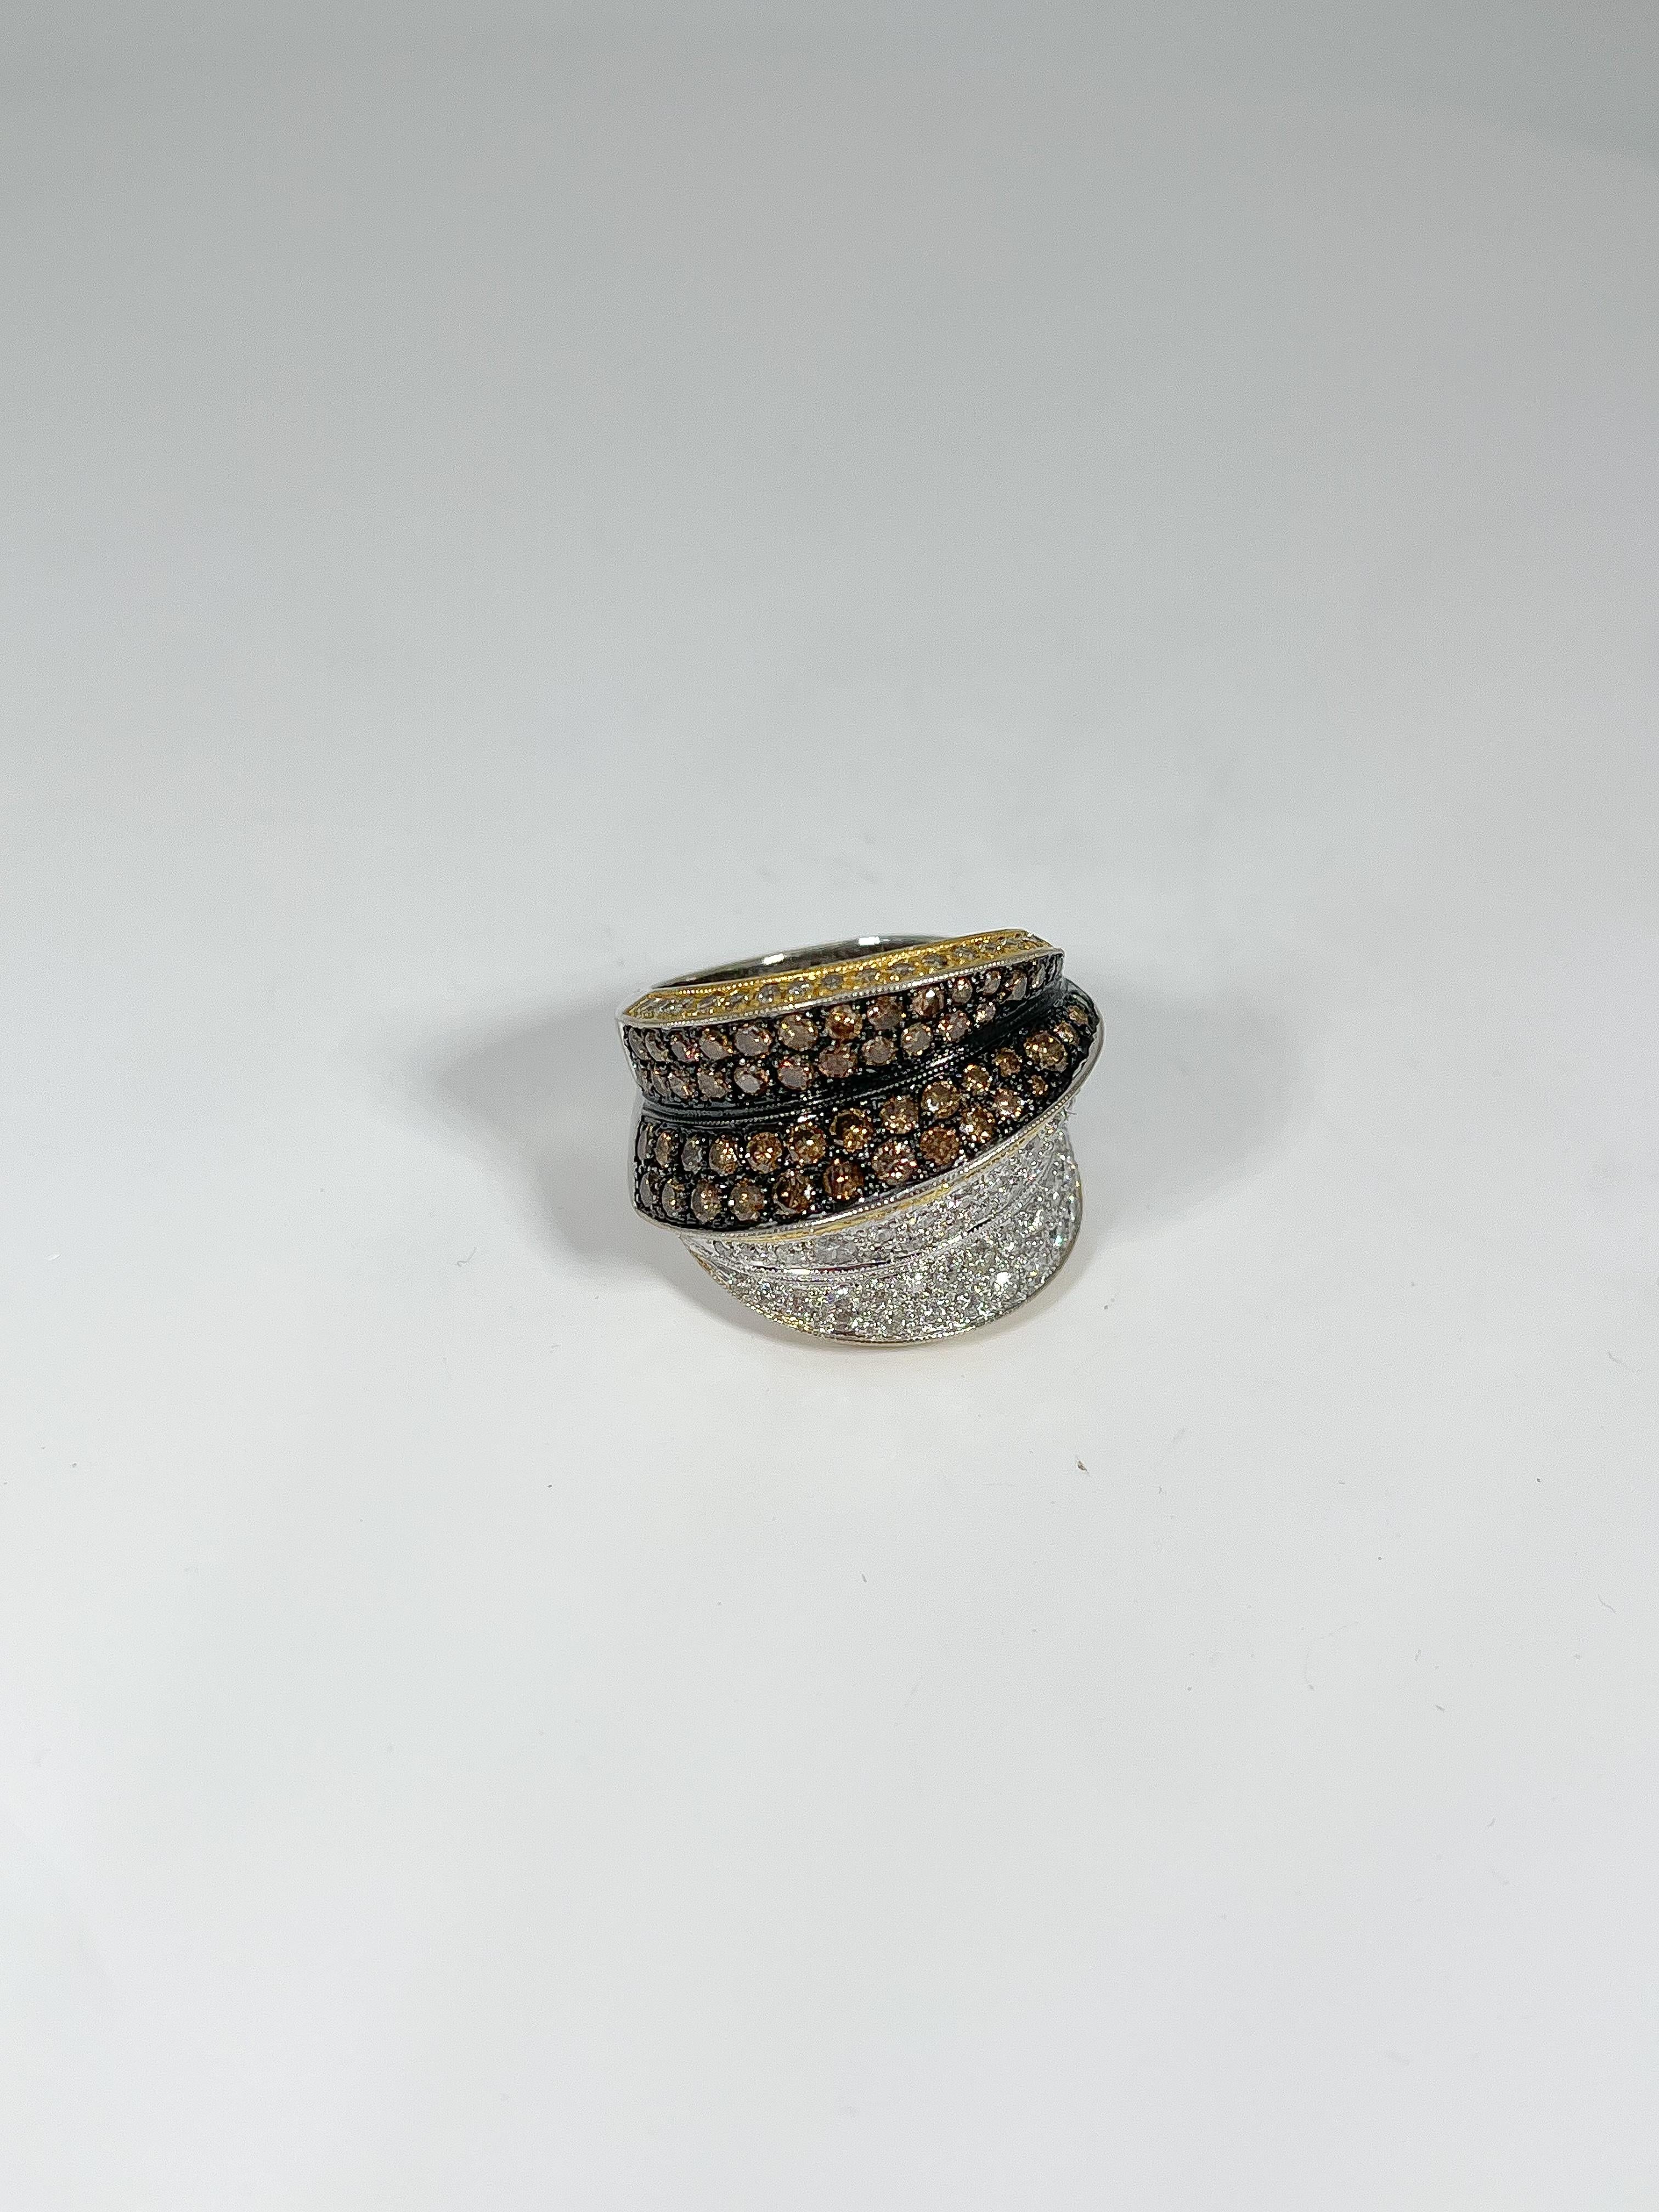 Dieser einzigartige zweifarbige Cocktailring ist schwarz rhodiniert und mit 107 weißen Diamanten und 52 Schokoladendiamanten besetzt. Der Ring misst 19,5 mm. Passt auf einen Finger der Größe 6 1/4 und wiegt 15,56 Gramm.